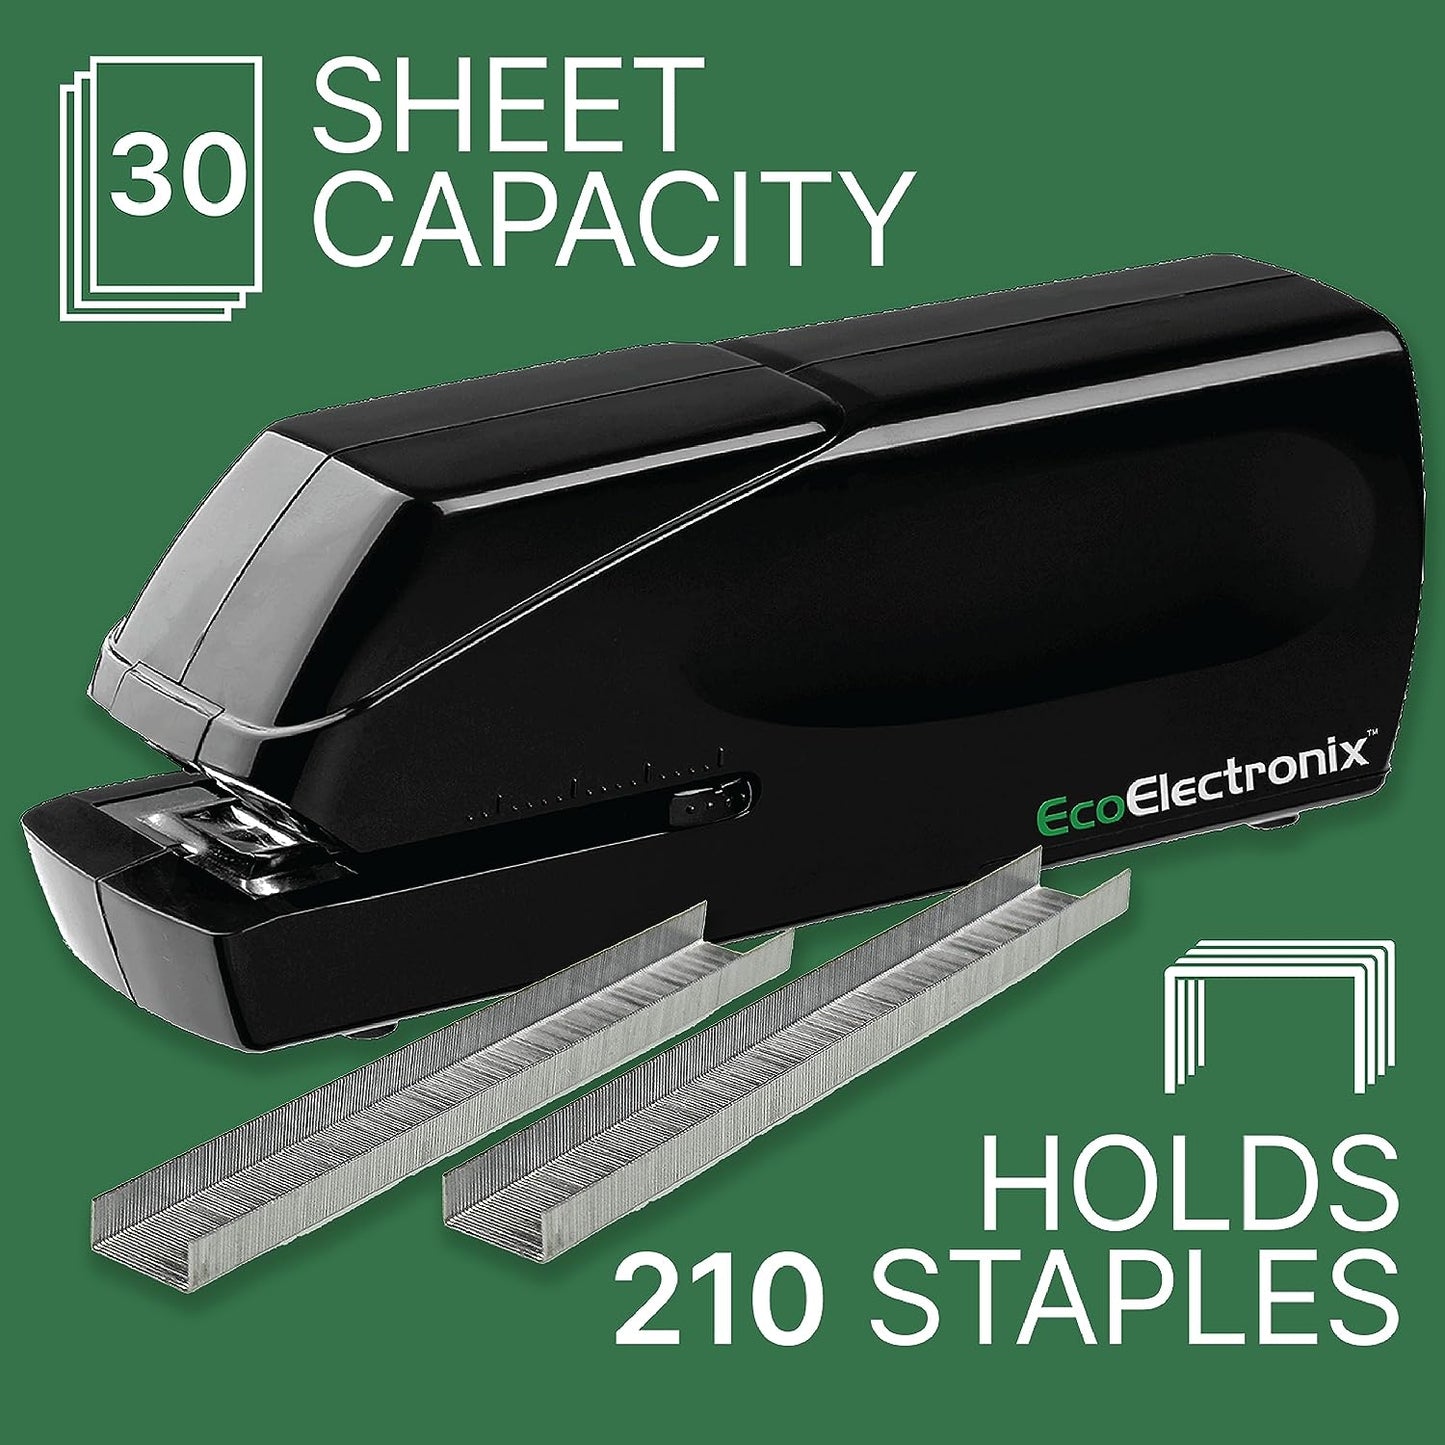 Eco Electronix StaplePro black sheet capacity